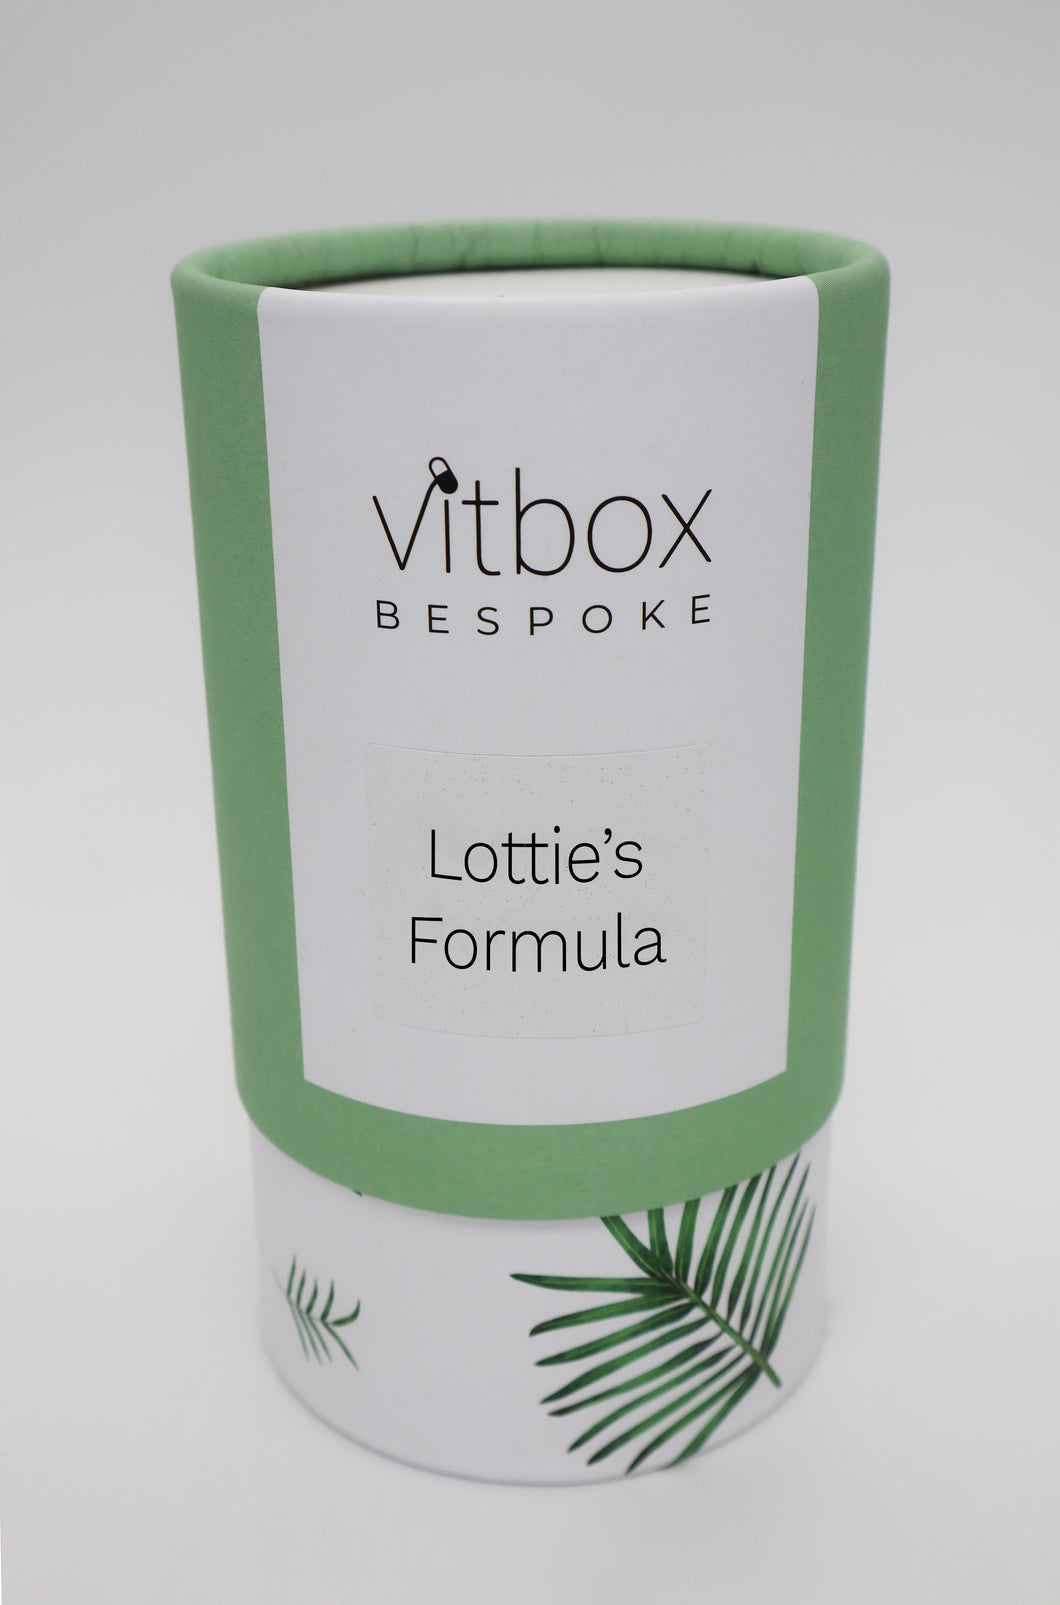 Lottie's Vitbox Bespoke